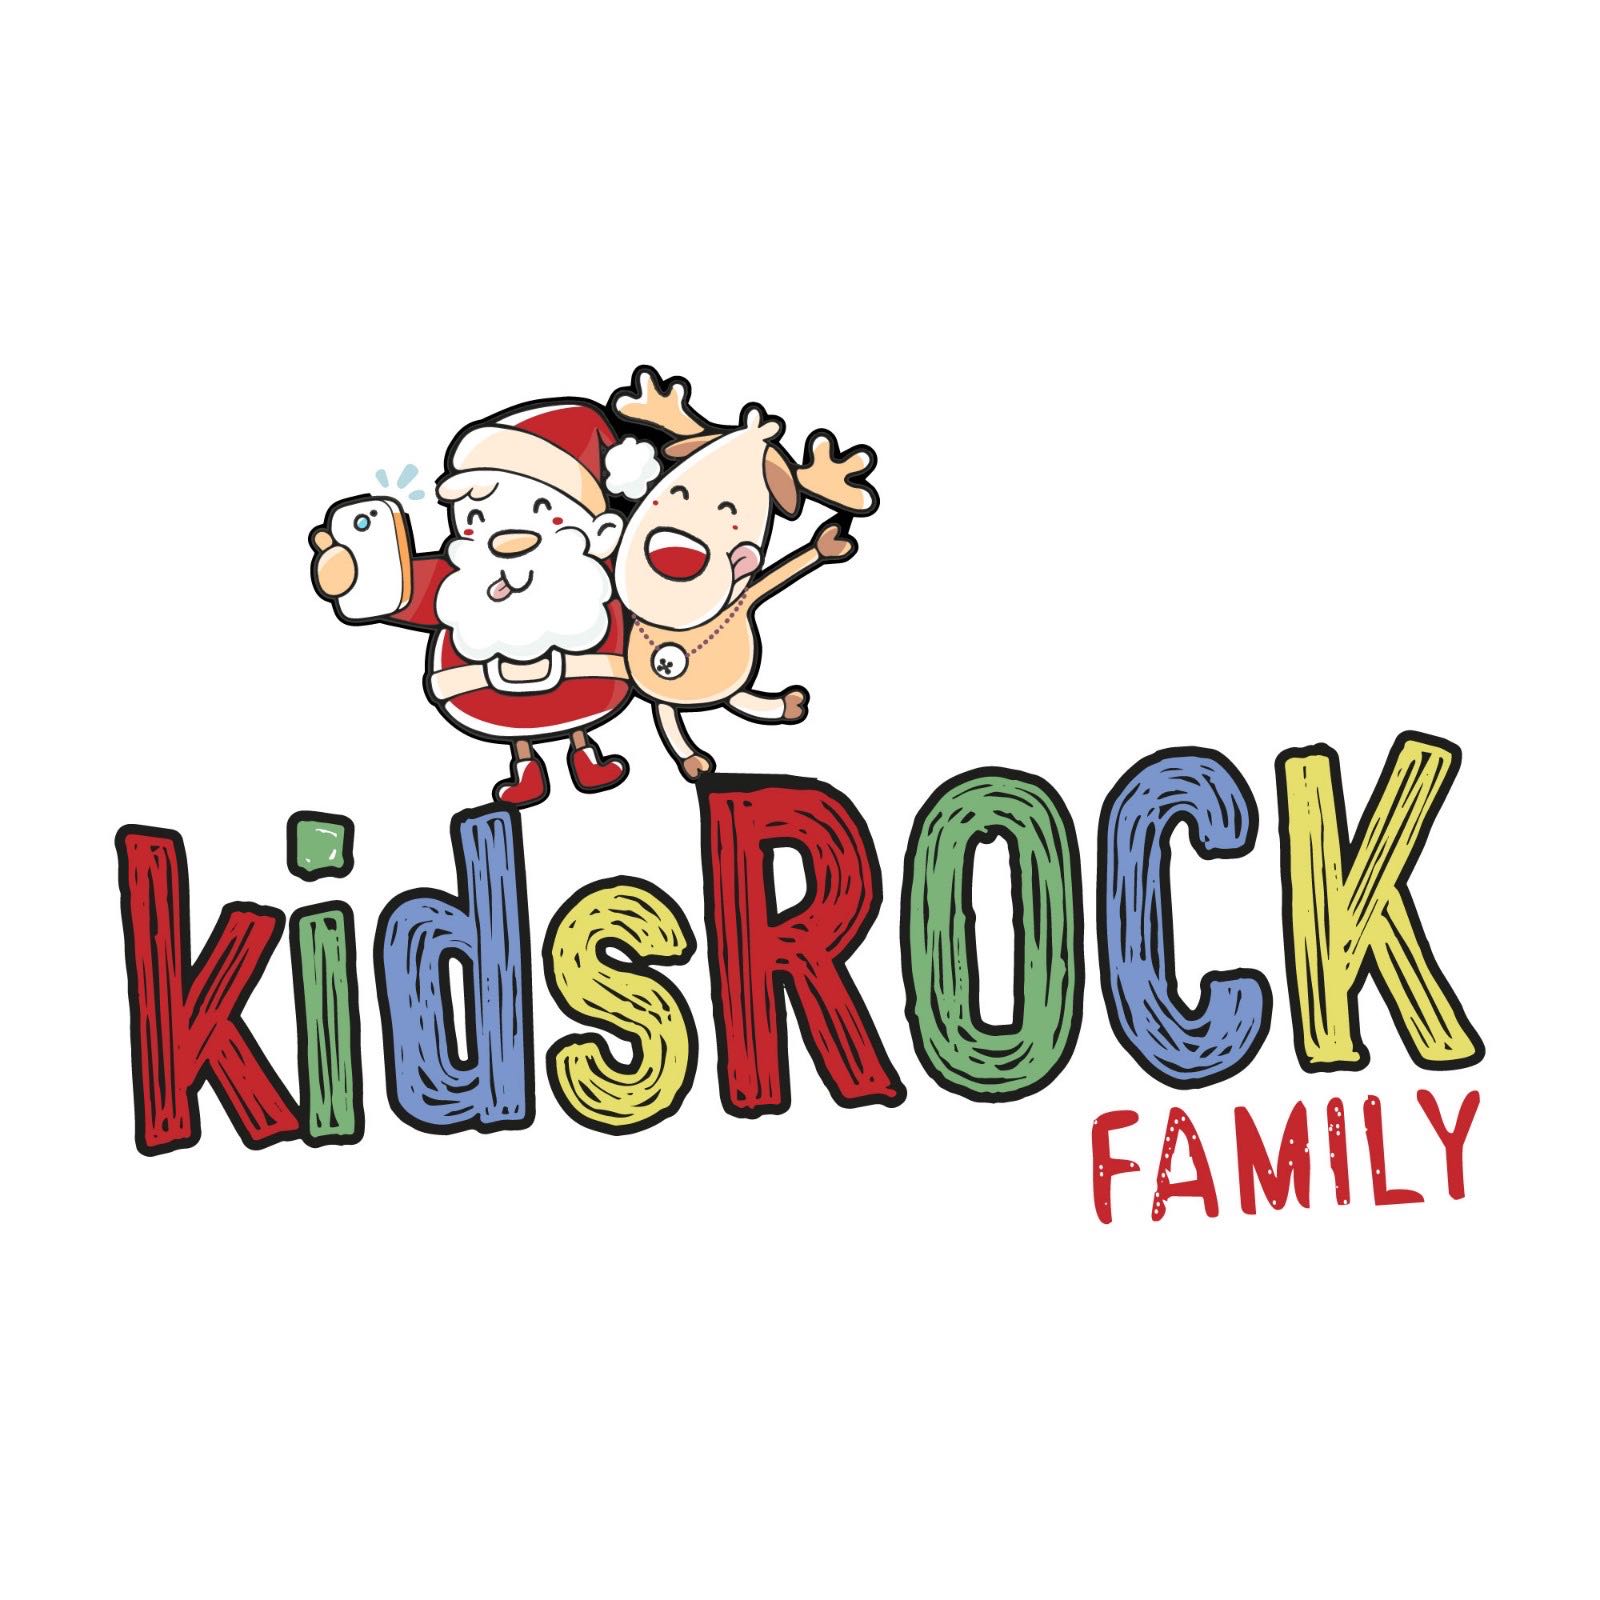 Kids Rock Family os desea una feliz navidad